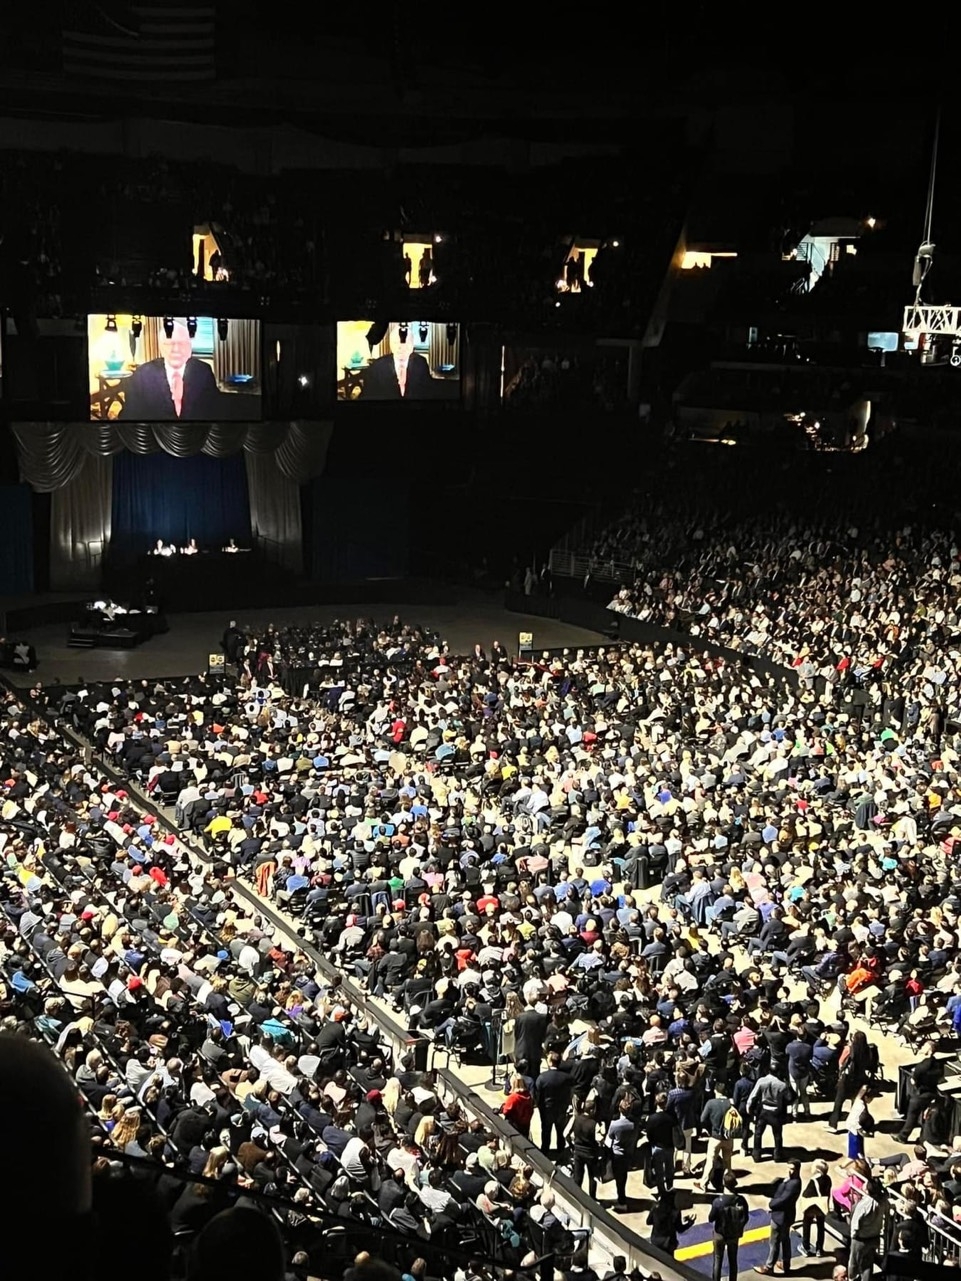 Gần 20.000 người tham dự, ĐHCĐ công ty của Warren Buffett như diễn ra 'như một giấc mơ'